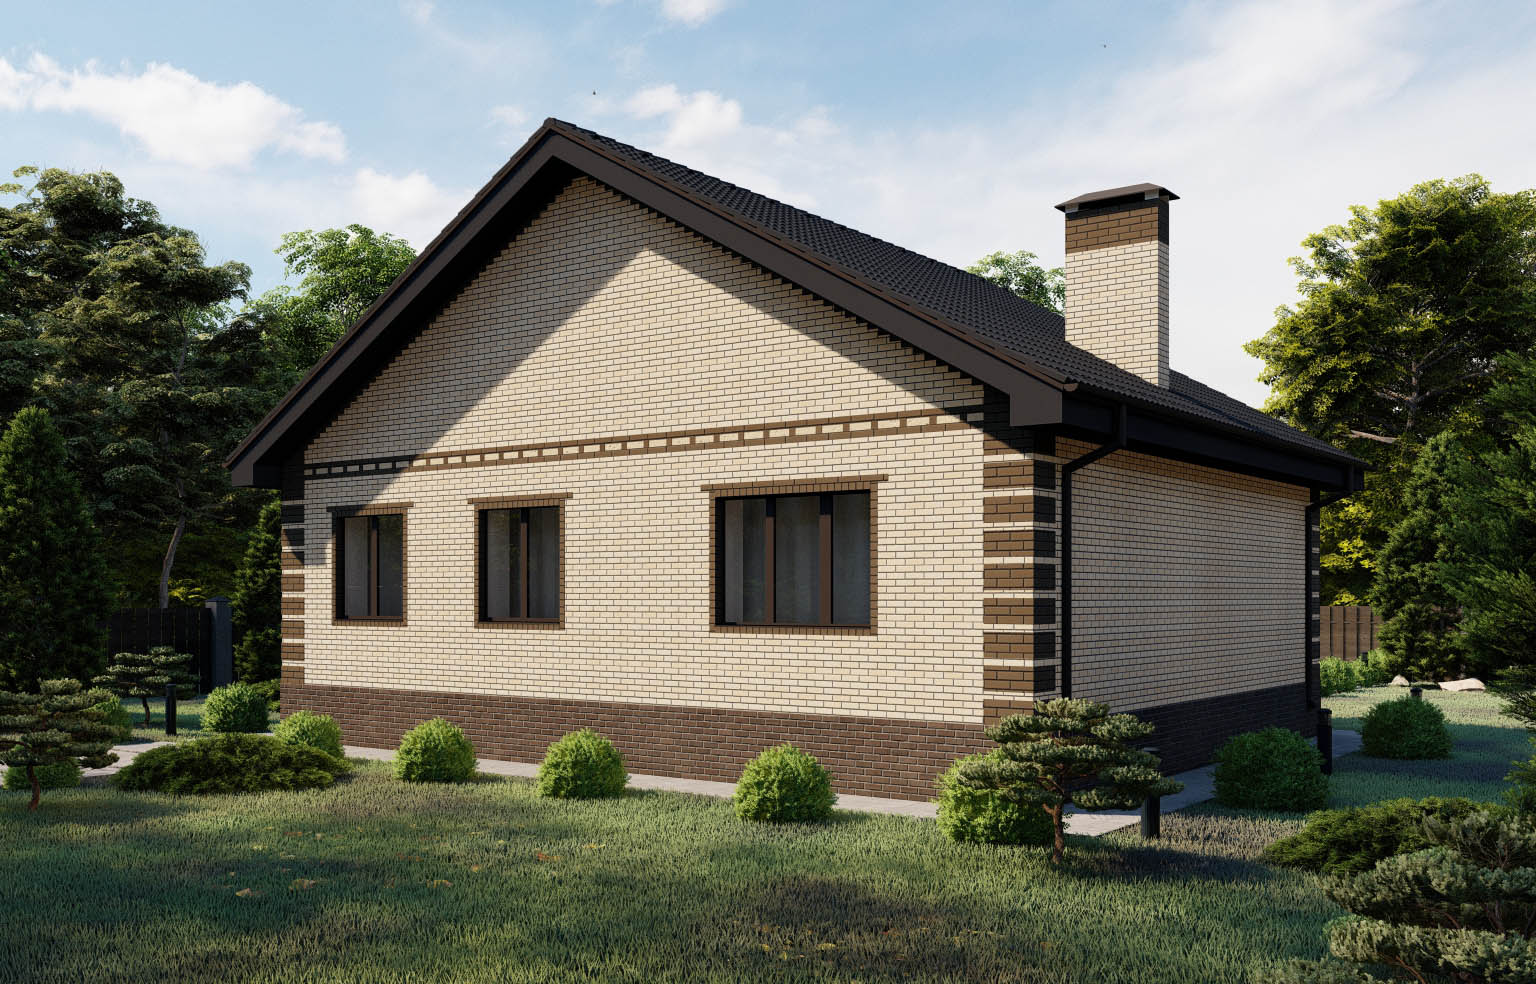 Проект дома с двускатной крышей и высоким цоколем | Архитектурное бюро  Беларх - Авторские проекты планы домов и коттеджей